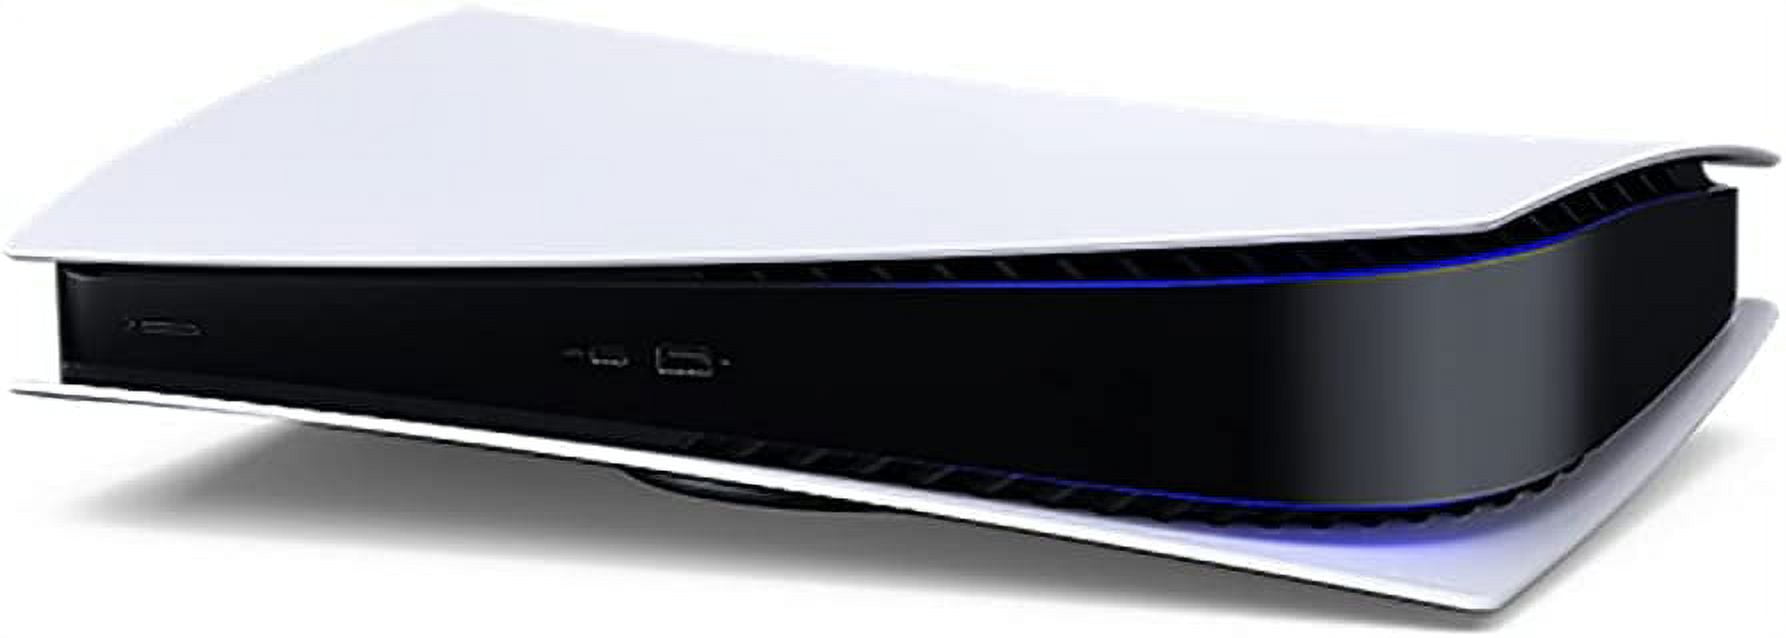  Sony Playstation 5 PS5 Digital Edition - Consola de juegos,  memoria GDDR6 de 16 GB, SSD de 825 GB, WiFi 6, Bluetooth 5.1, Ethernet,  salida 8K de 120 Hz, audio 3D Tempest : Electrónica